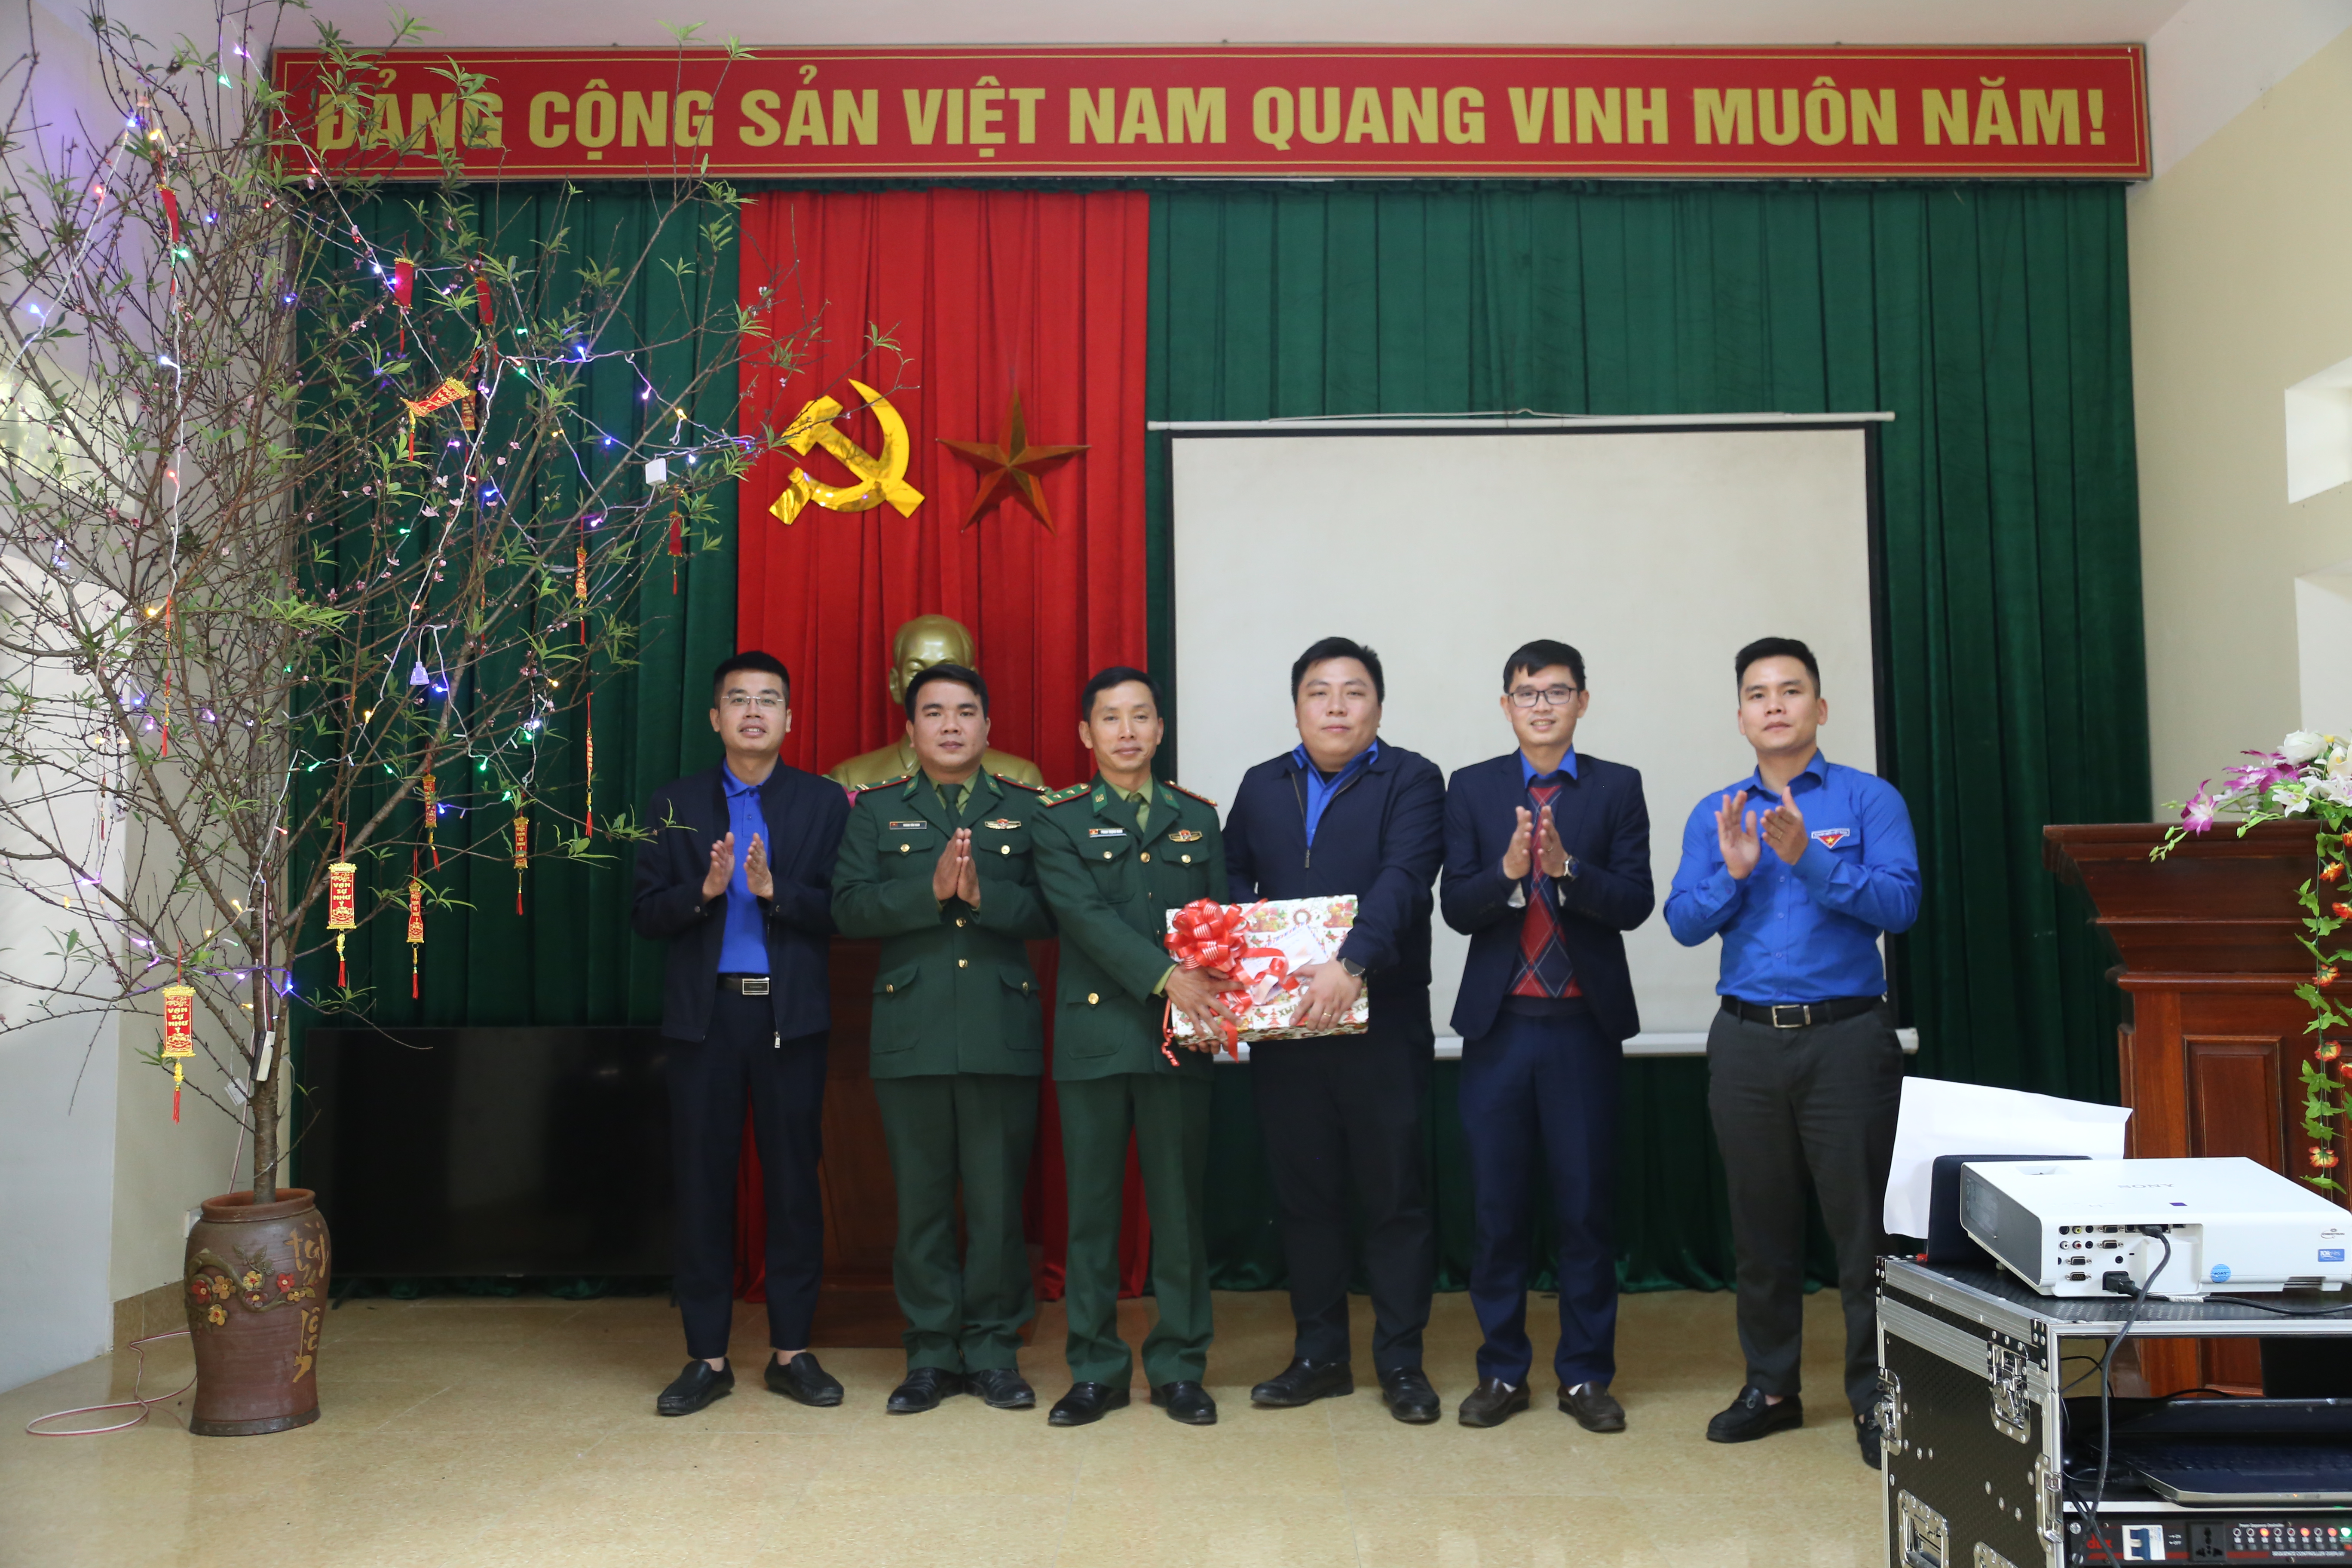 Nhân dịp này, đoàn cũng trao tặng phần quà chúc mừng năm mới các cán bộ, chiến sỹ Đồn Biên phòng Bản Giàng.